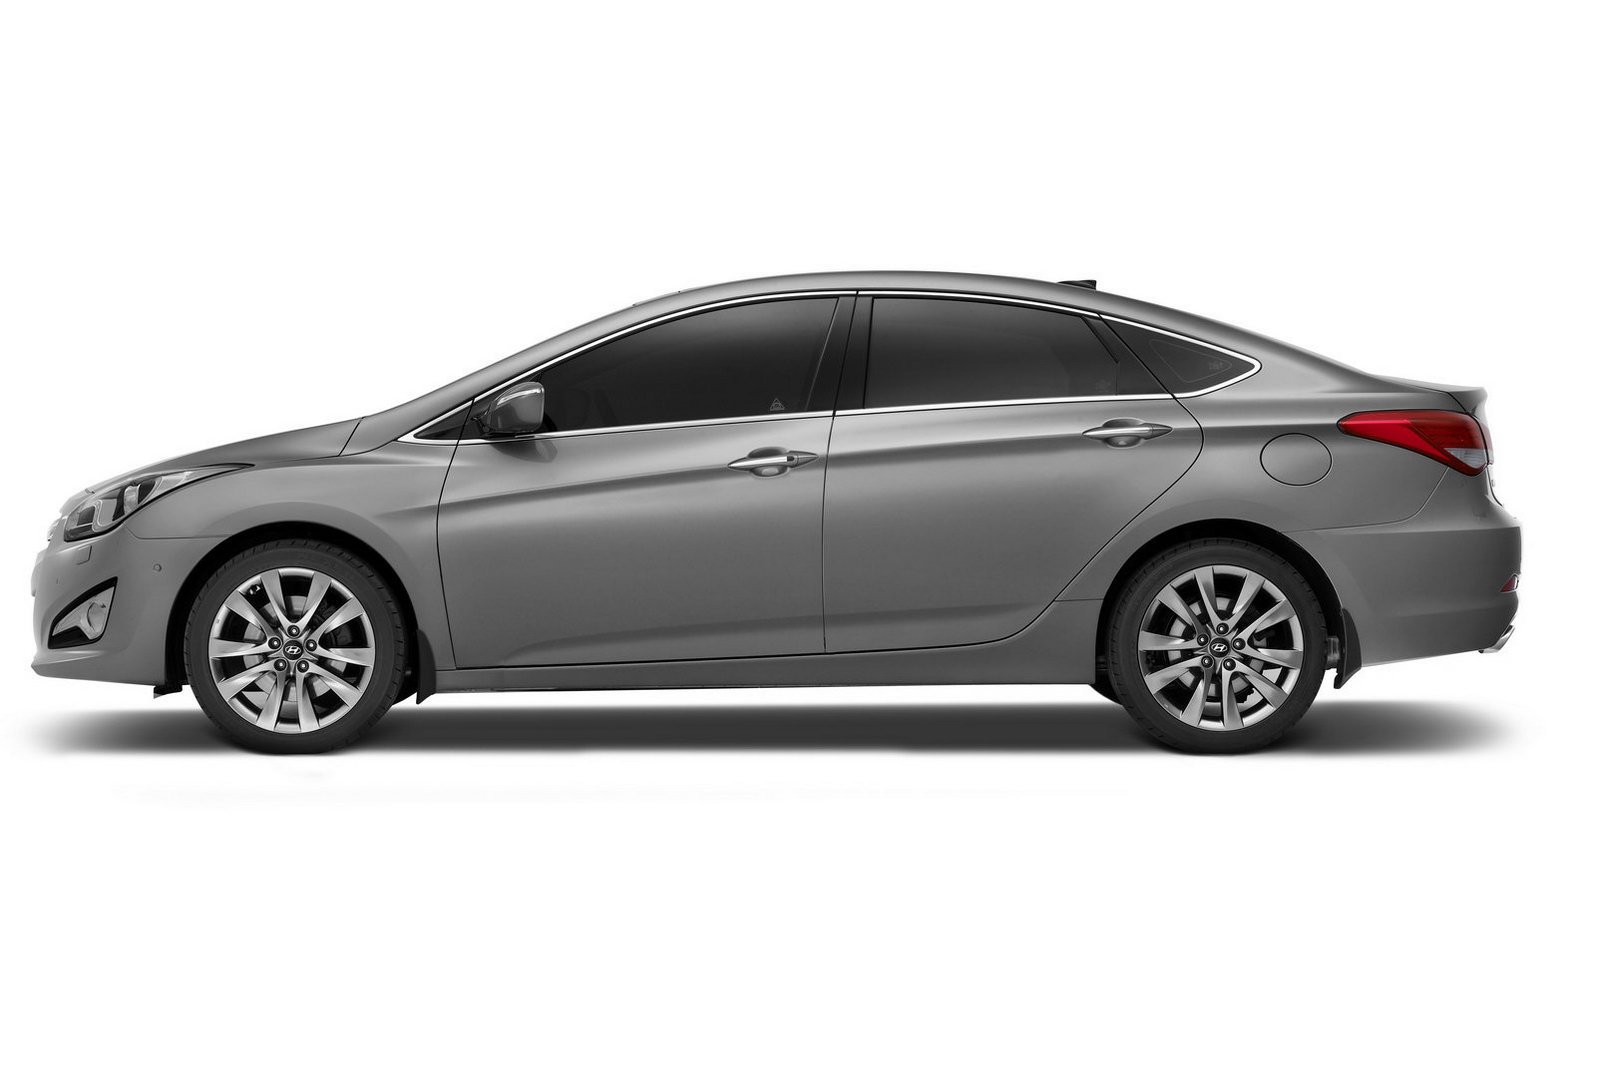 Hyundai i40 exterior - Side Profile